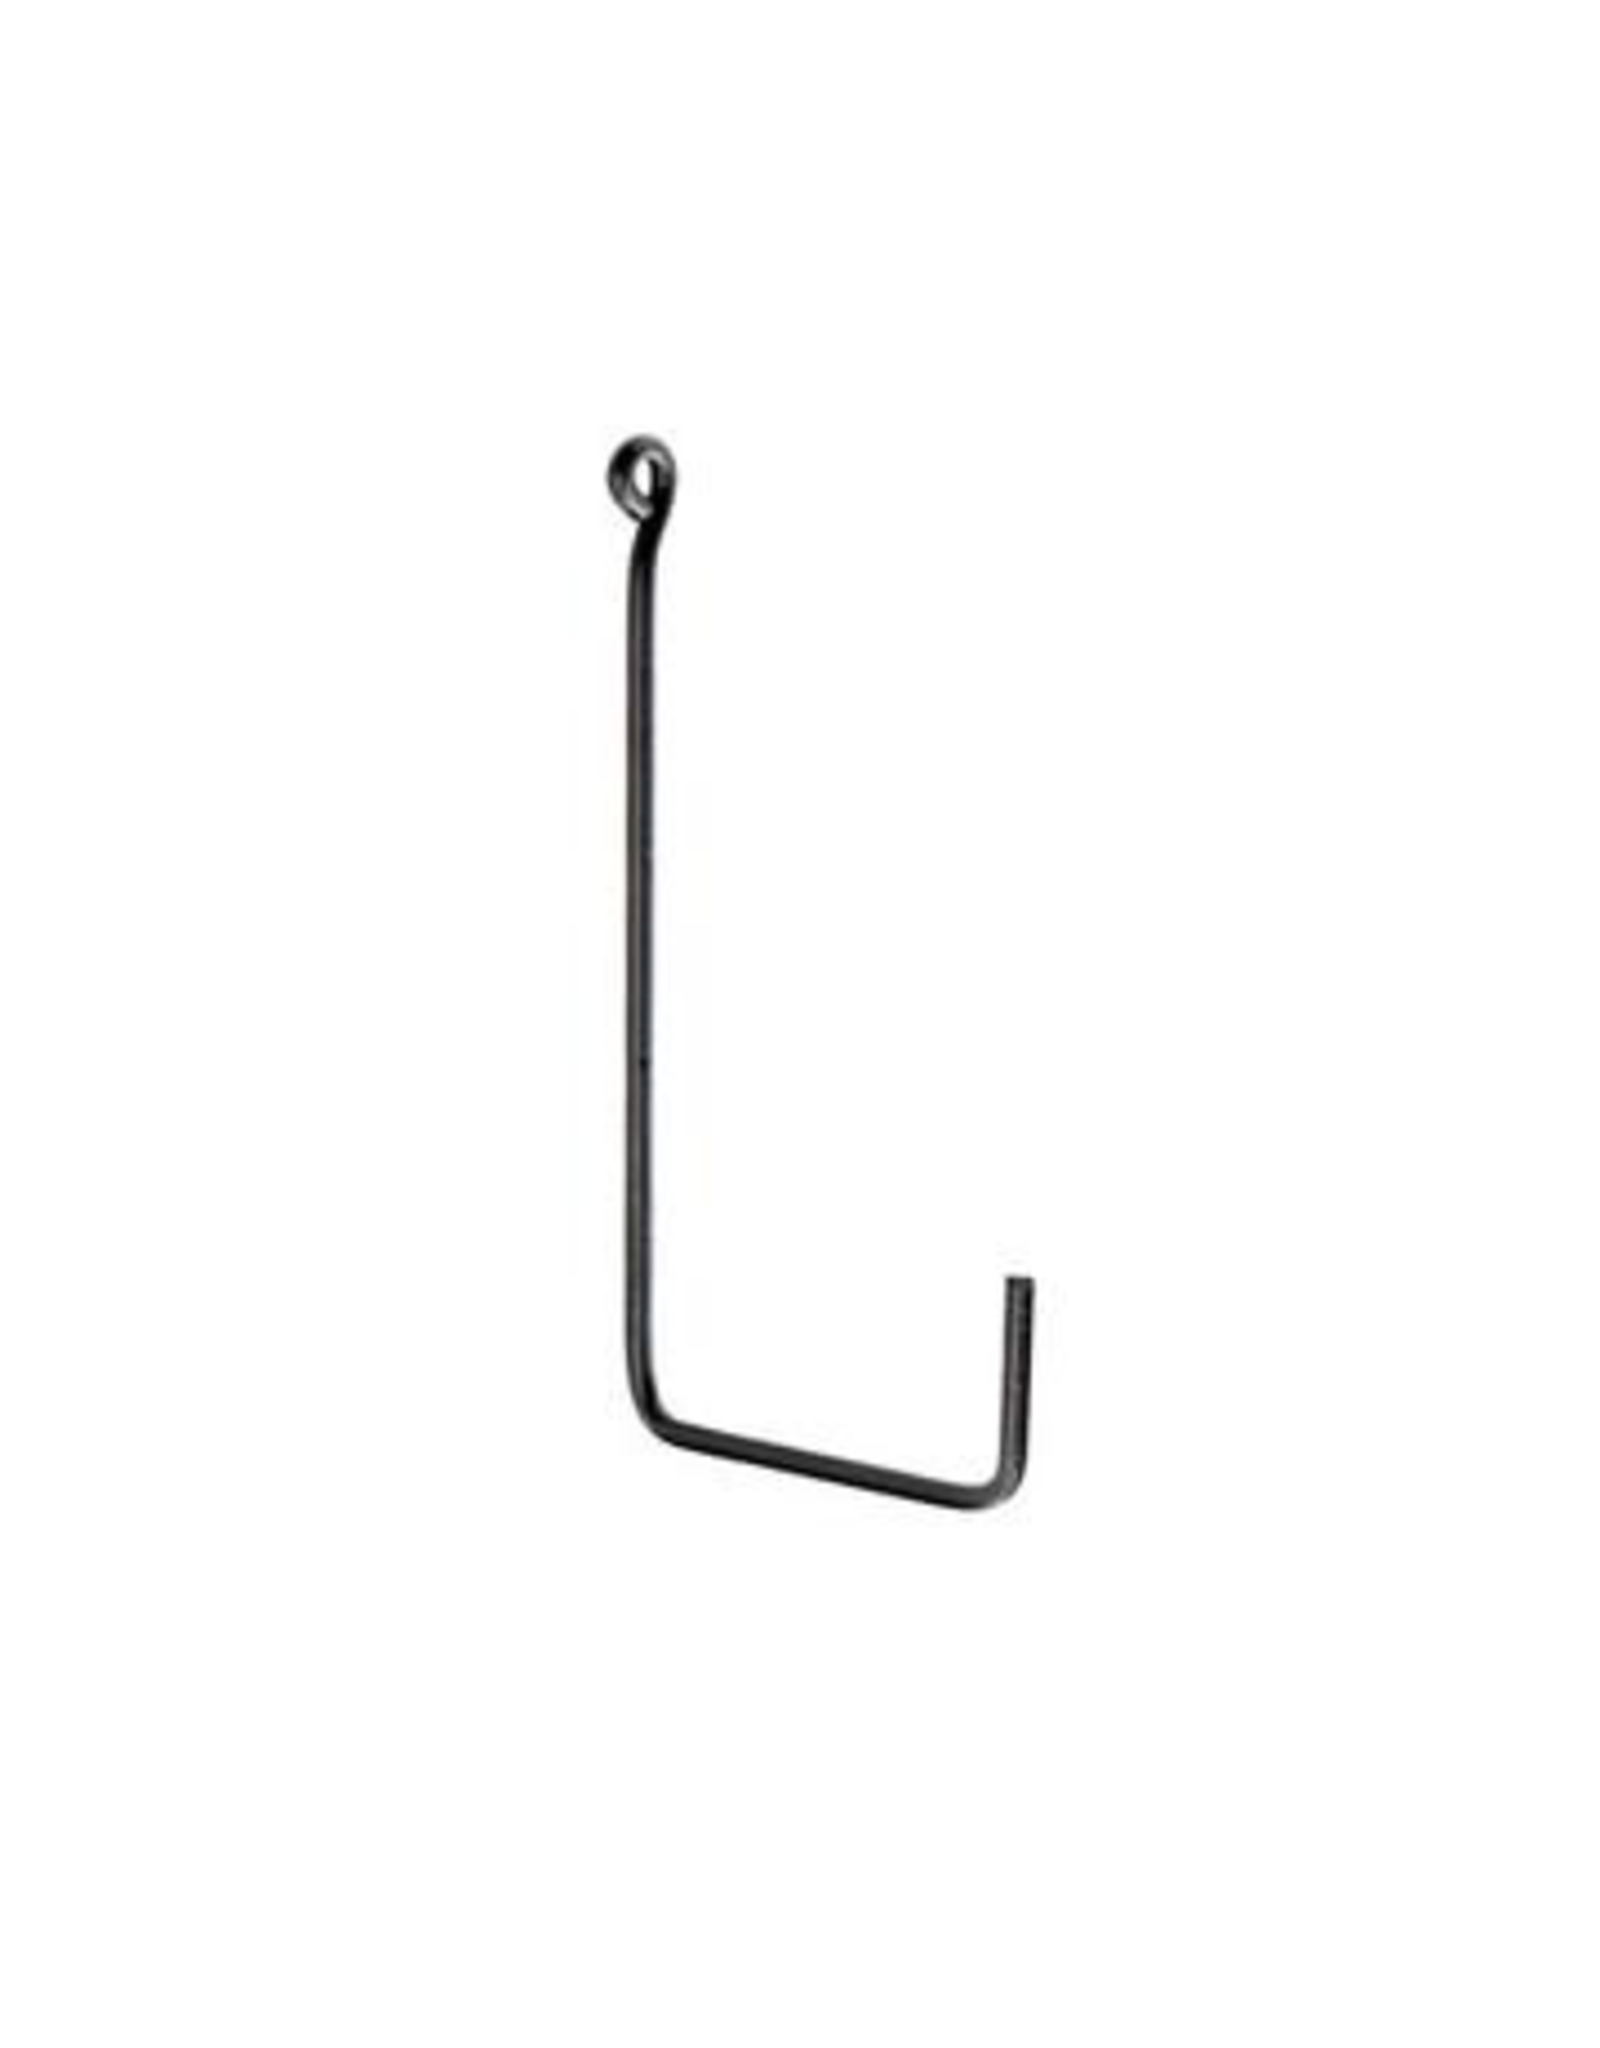 Large Iron Black “L Shape” Single Hook